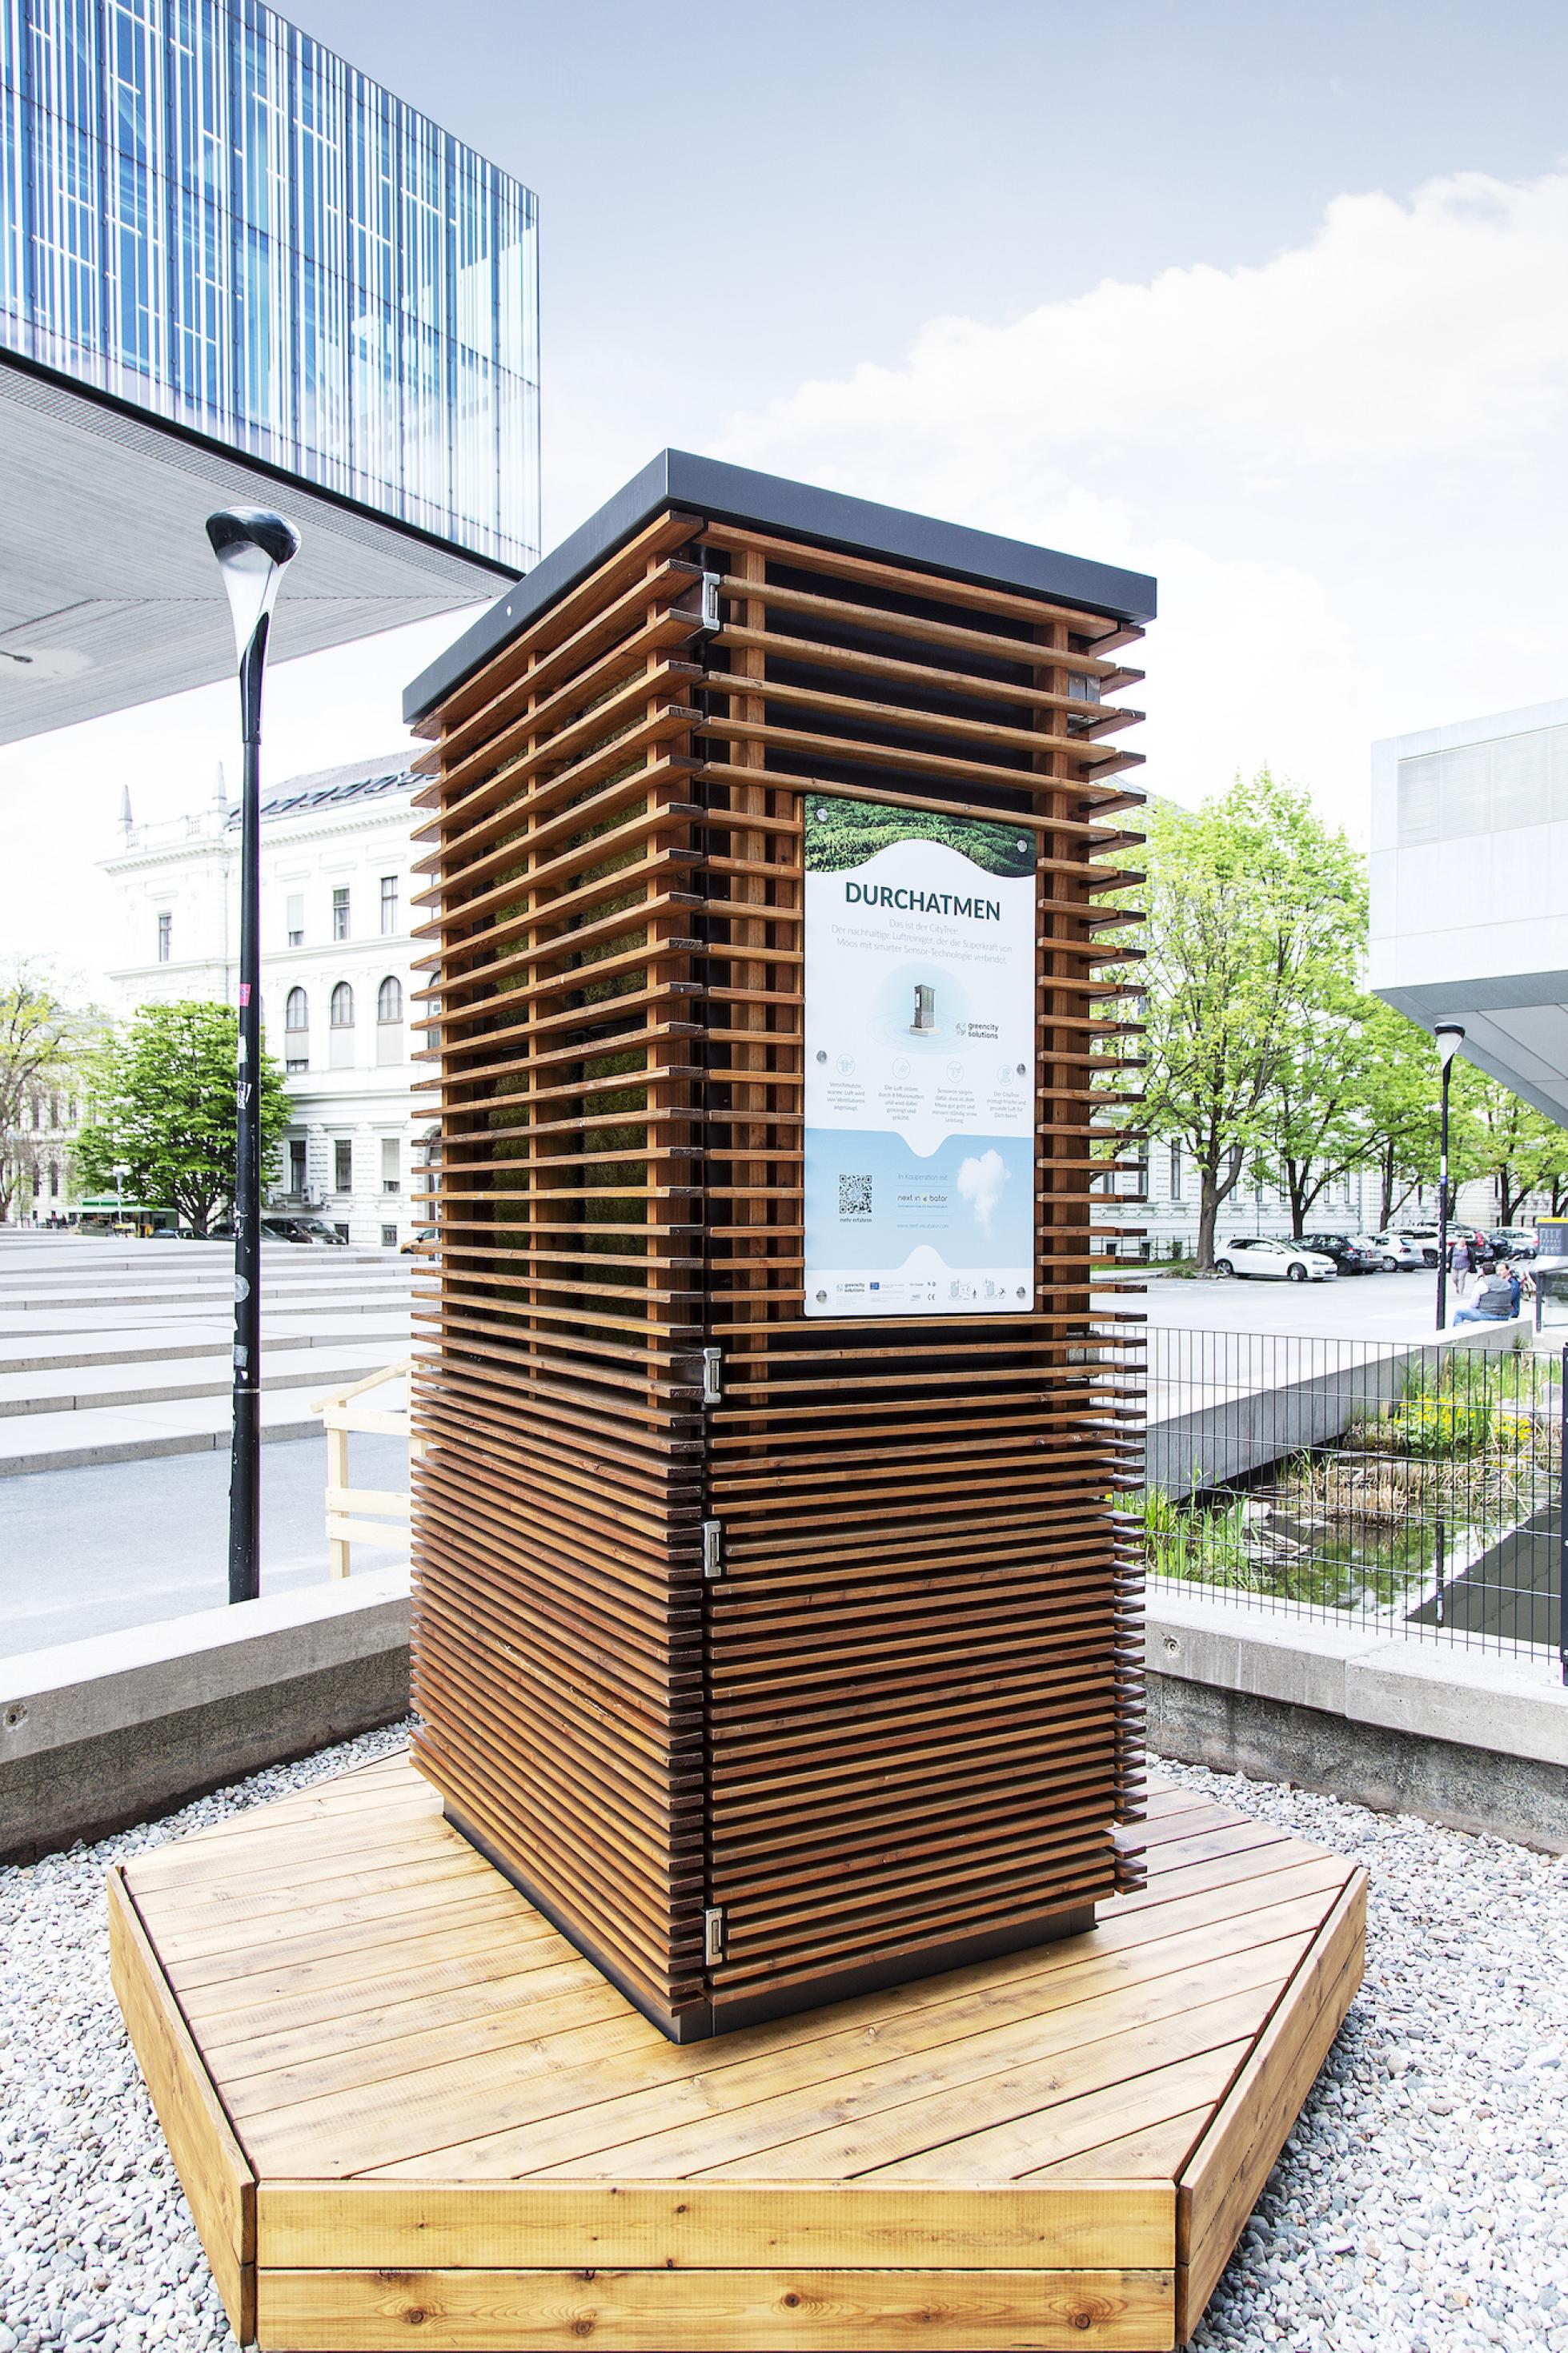 Viereckige, rund zwei Meter hohe Holzkonstruktion an einer Straße in Berlin. Auf der Vorderseite steht „Durchatmen“, am Fuß ist eine umlaufende Sitzbank angebracht.